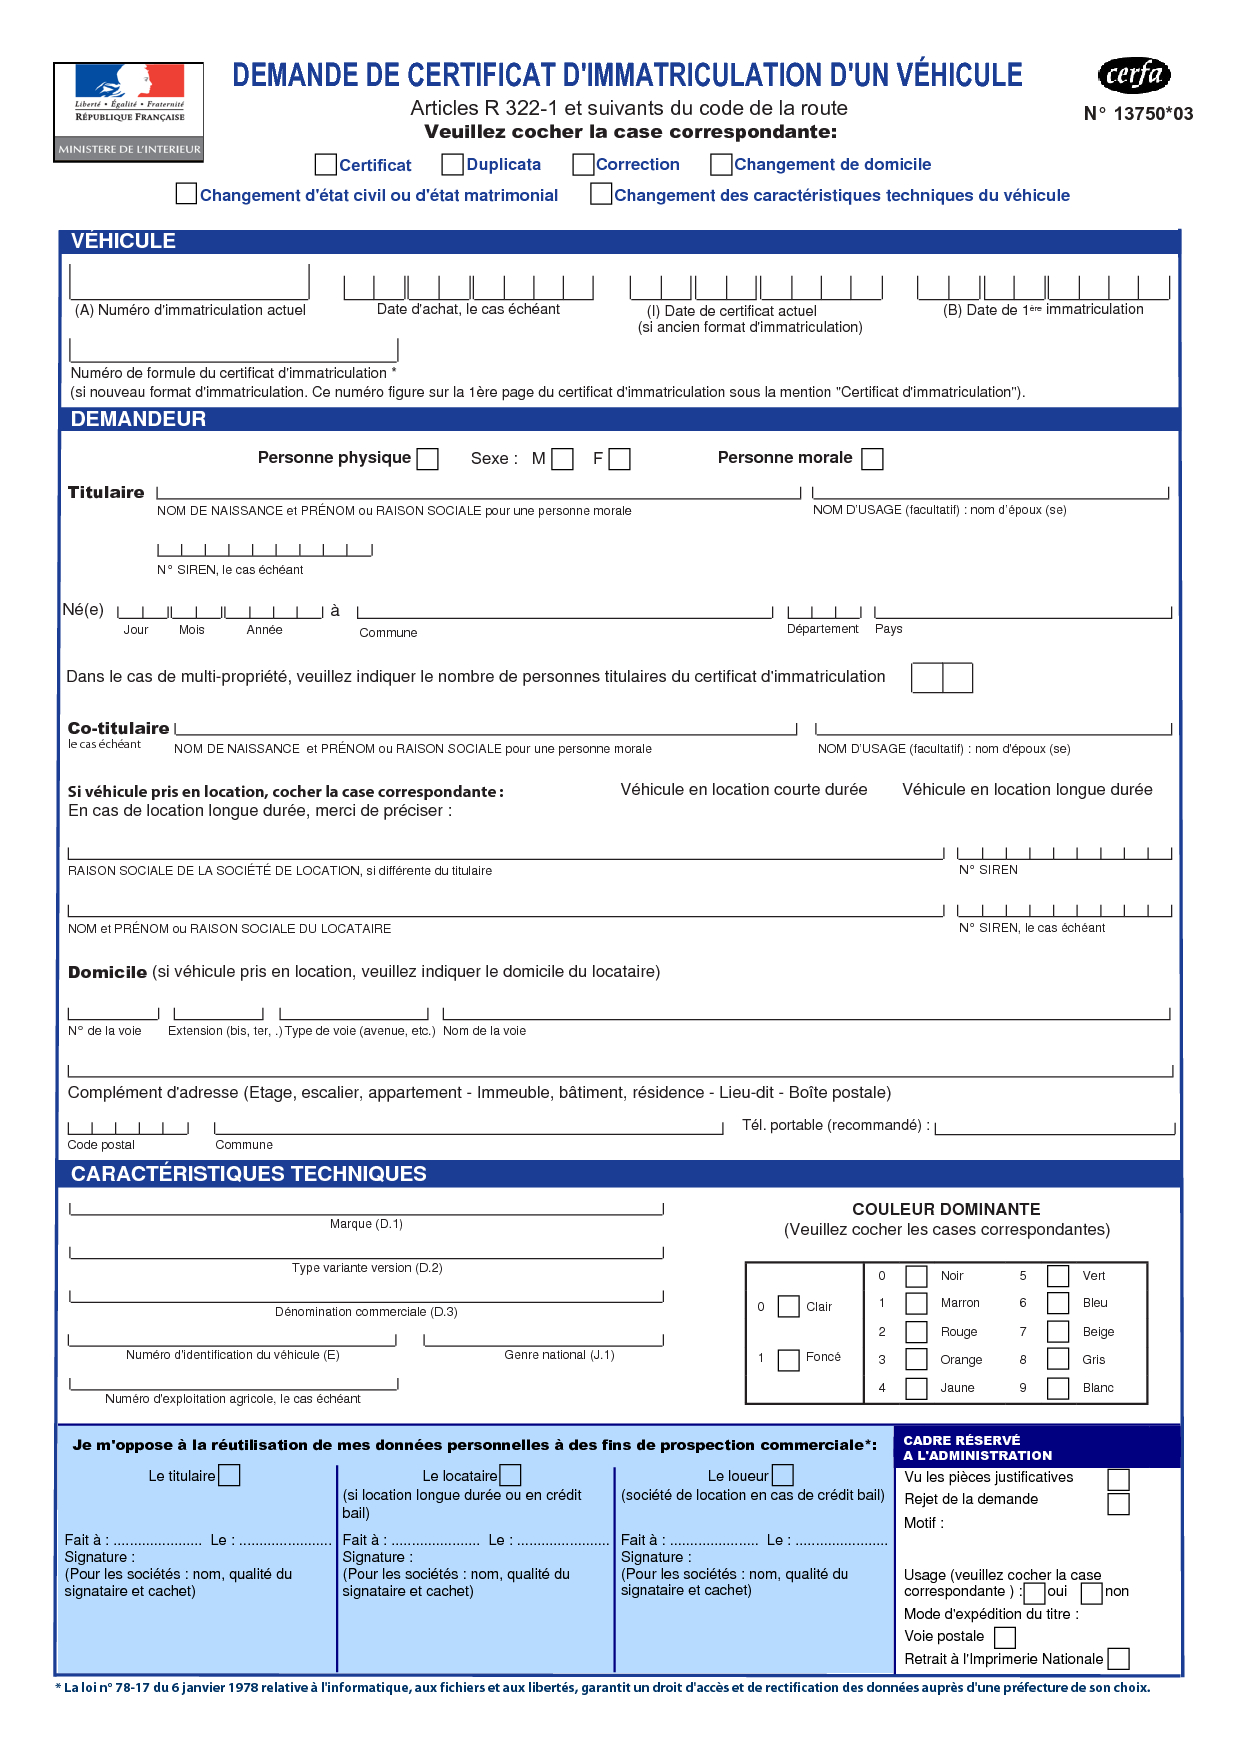 Application Form Formulaire De Demande D Immatriculation Carte Grise